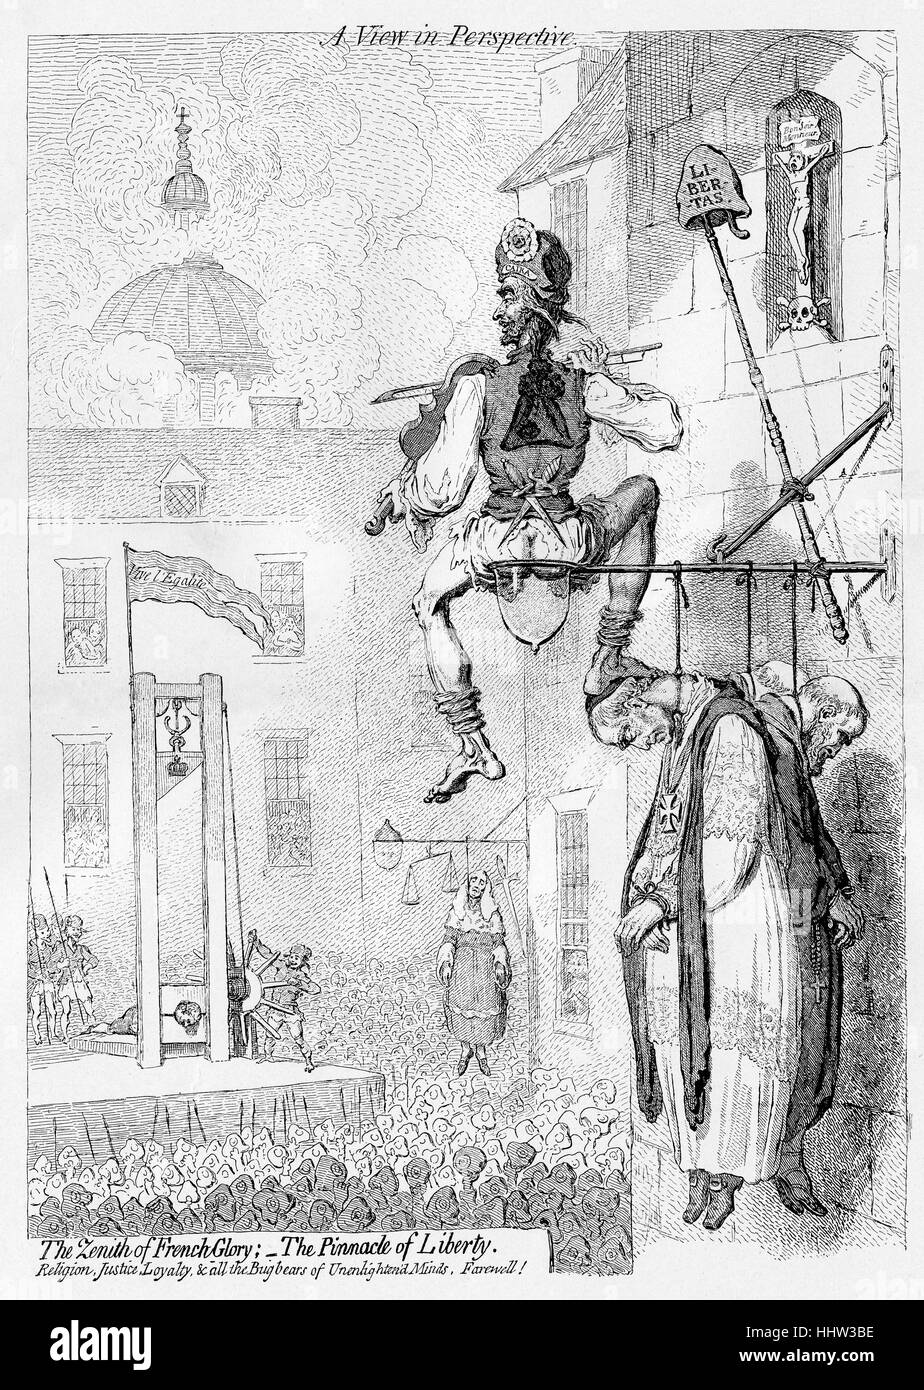 Hinrichtung von Louis XVI - 1793 Karikatur von James Gillray satirising der französischen Revolution. Bildunterschrift lautet: "den Höhepunkt der französischen Herrlichkeit; der Gipfel der Freiheit. Religion, Gerechtigkeit, Loyalität und den Gespenstern des unerleuchteten minds, lebe wohl! " Stockfoto